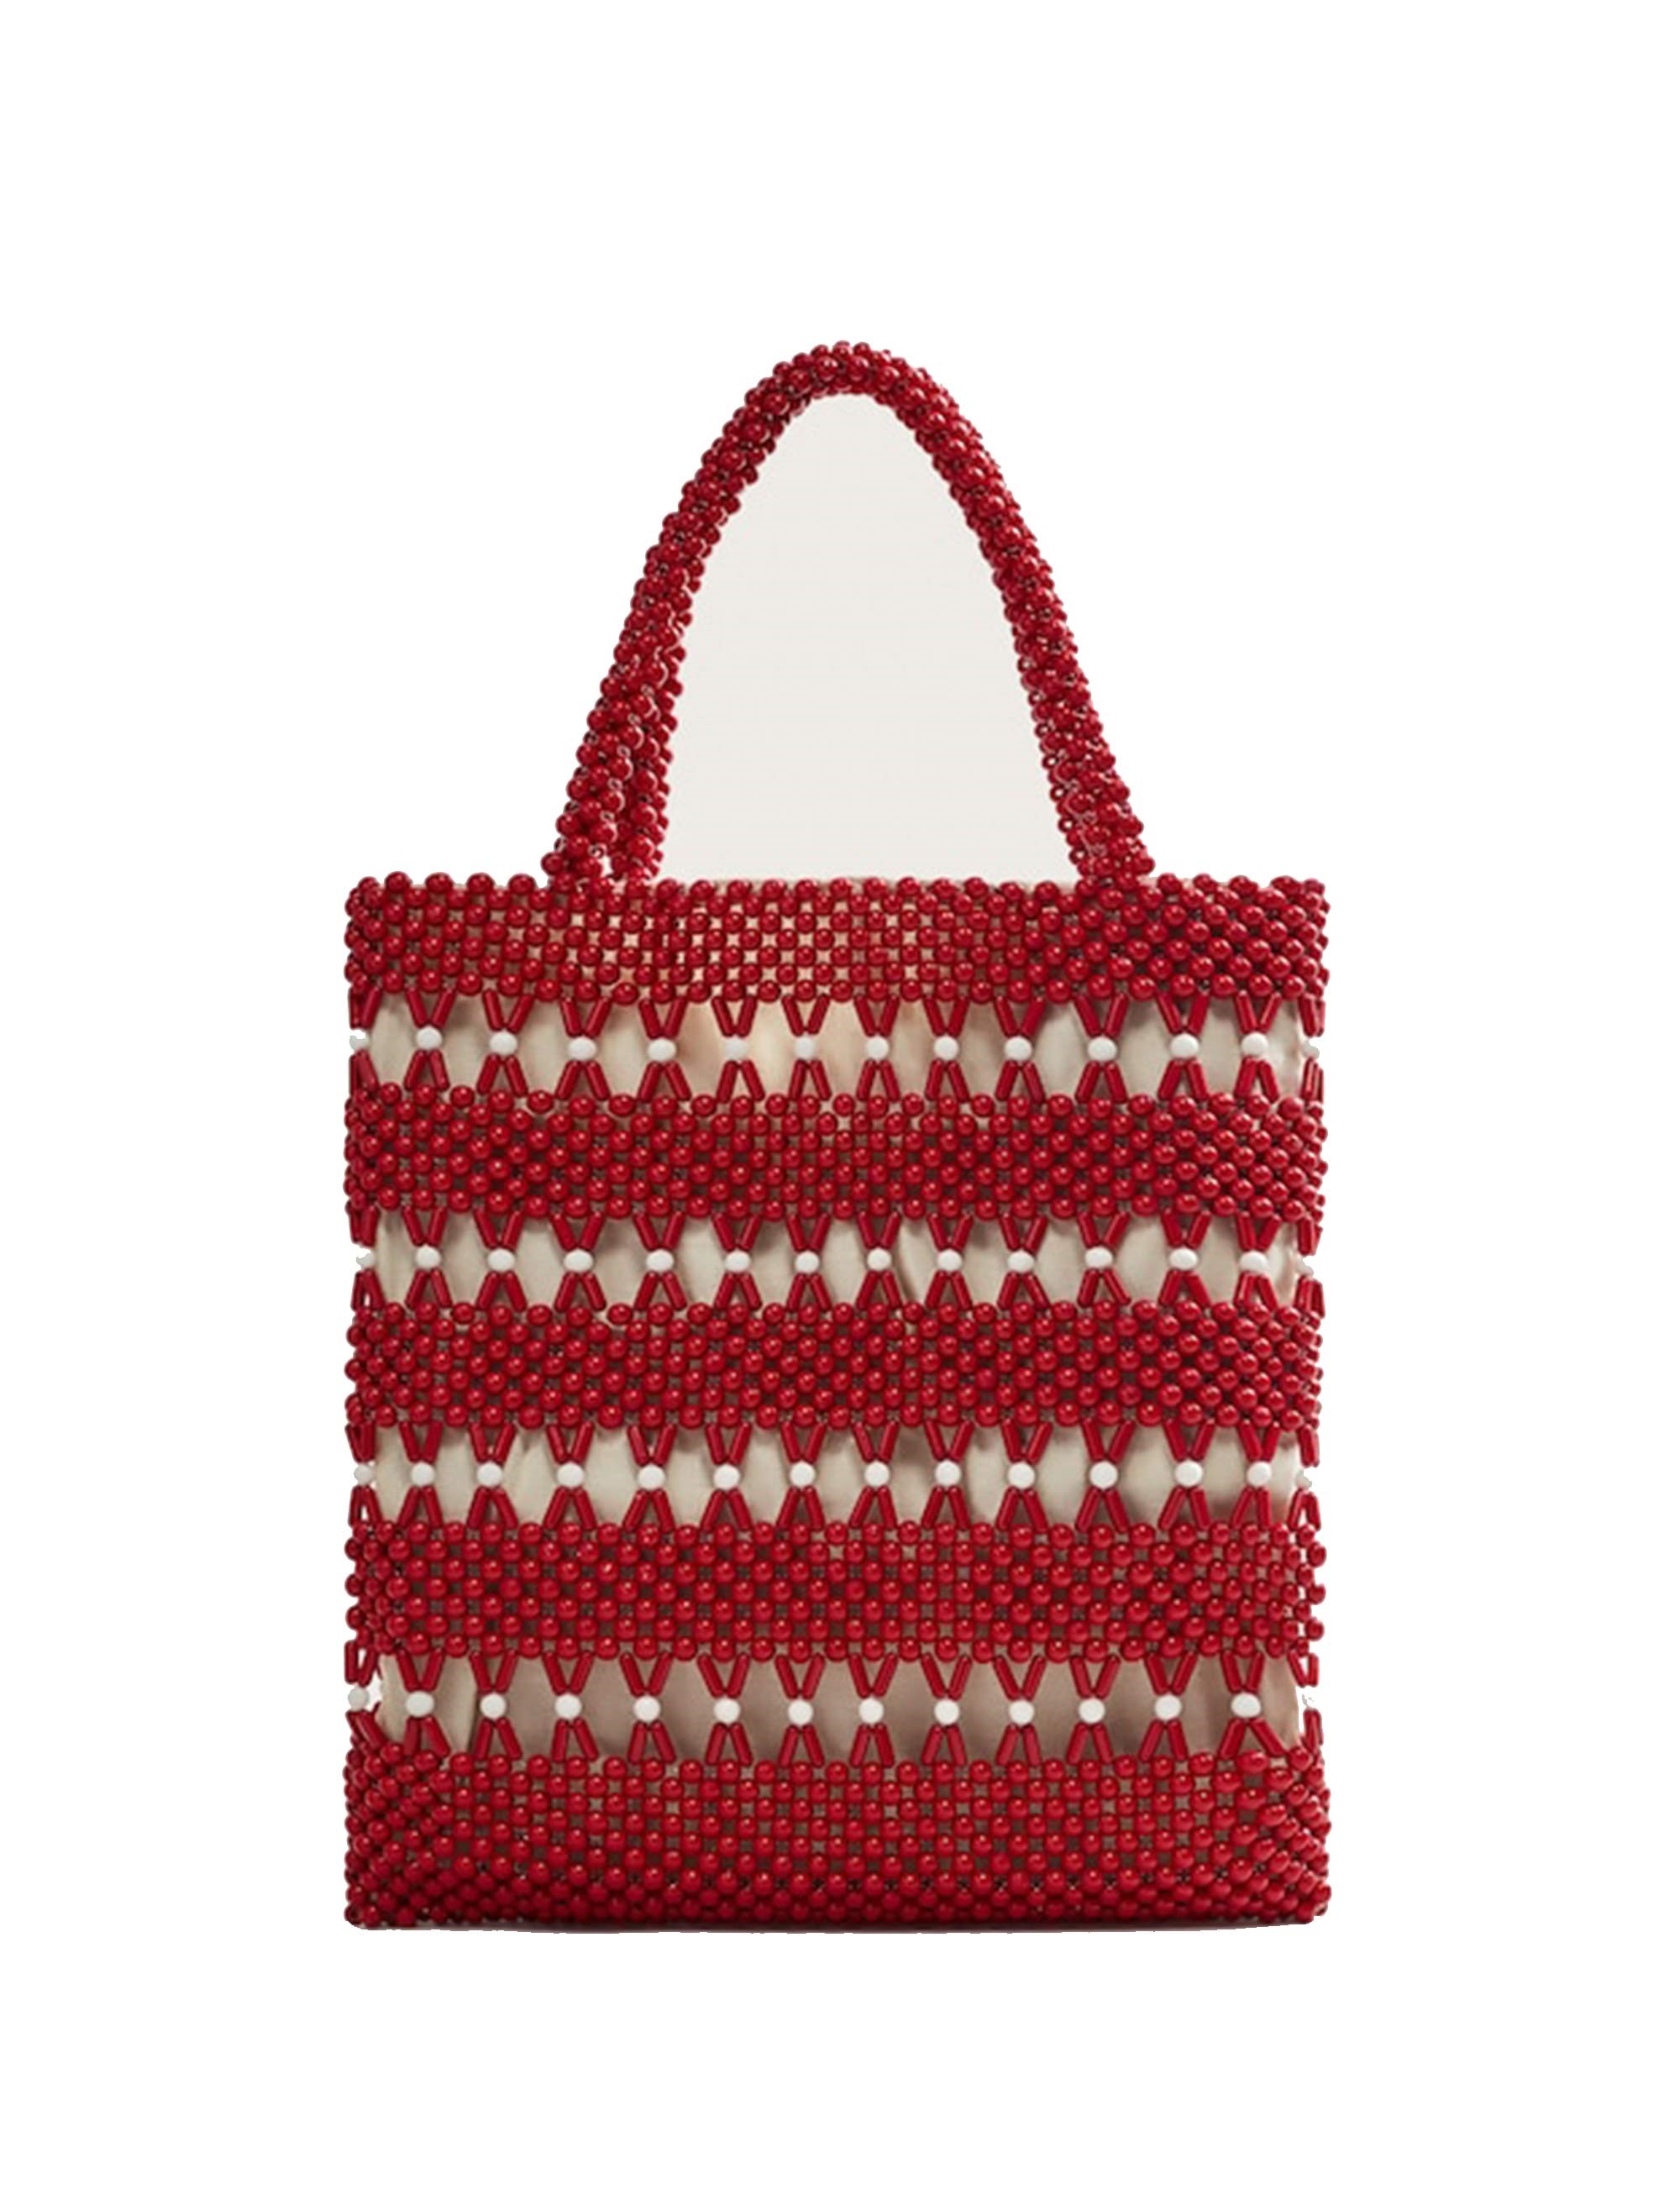 کیف دوشی زنانه - ویولتا بای مانگو تک سایز - قرمز - 1